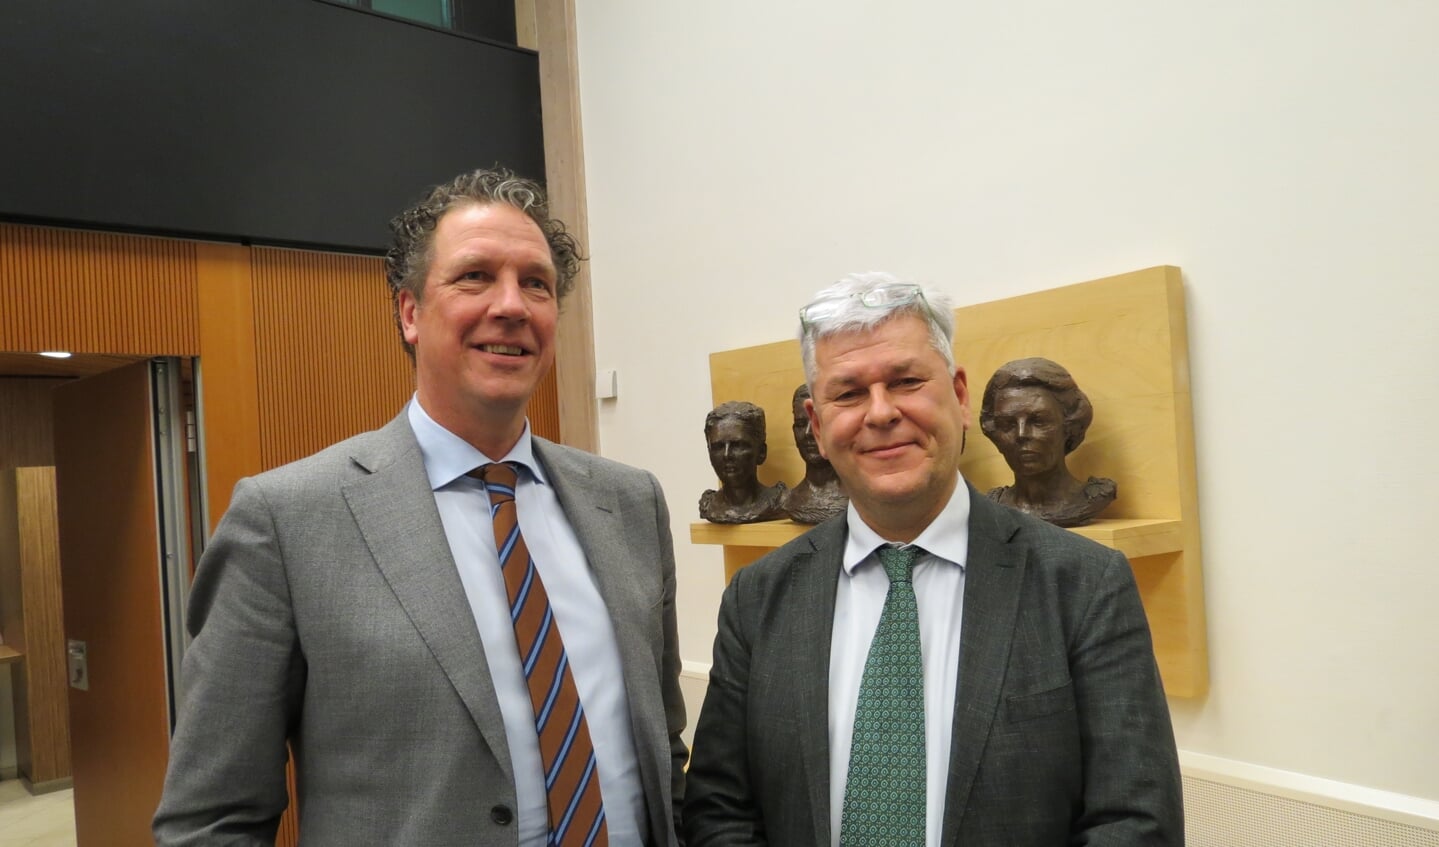 Peter Ypma woonde als ‘Gast van de raad’ de vergadering bij op uitnodiging van Werner de Groot (rechts).